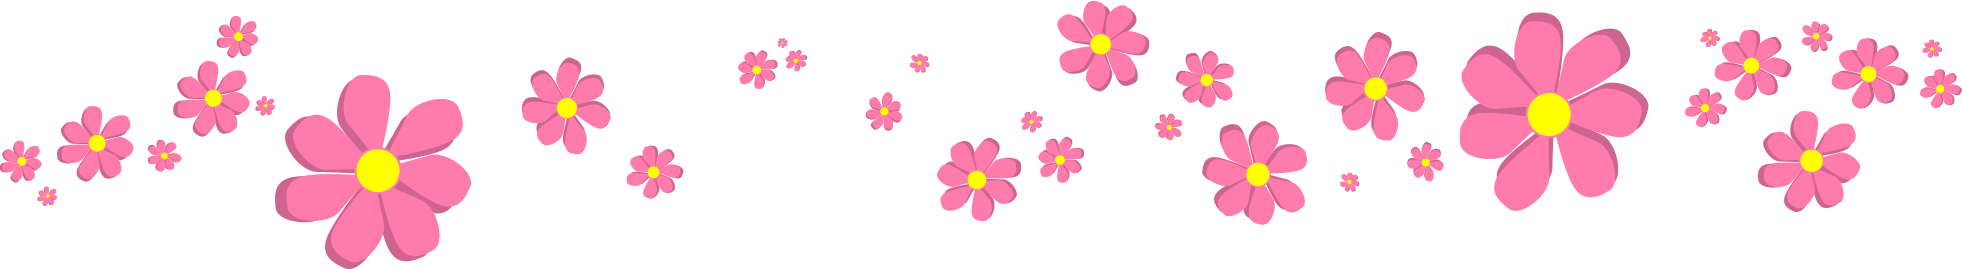 dessin de fleurs roses